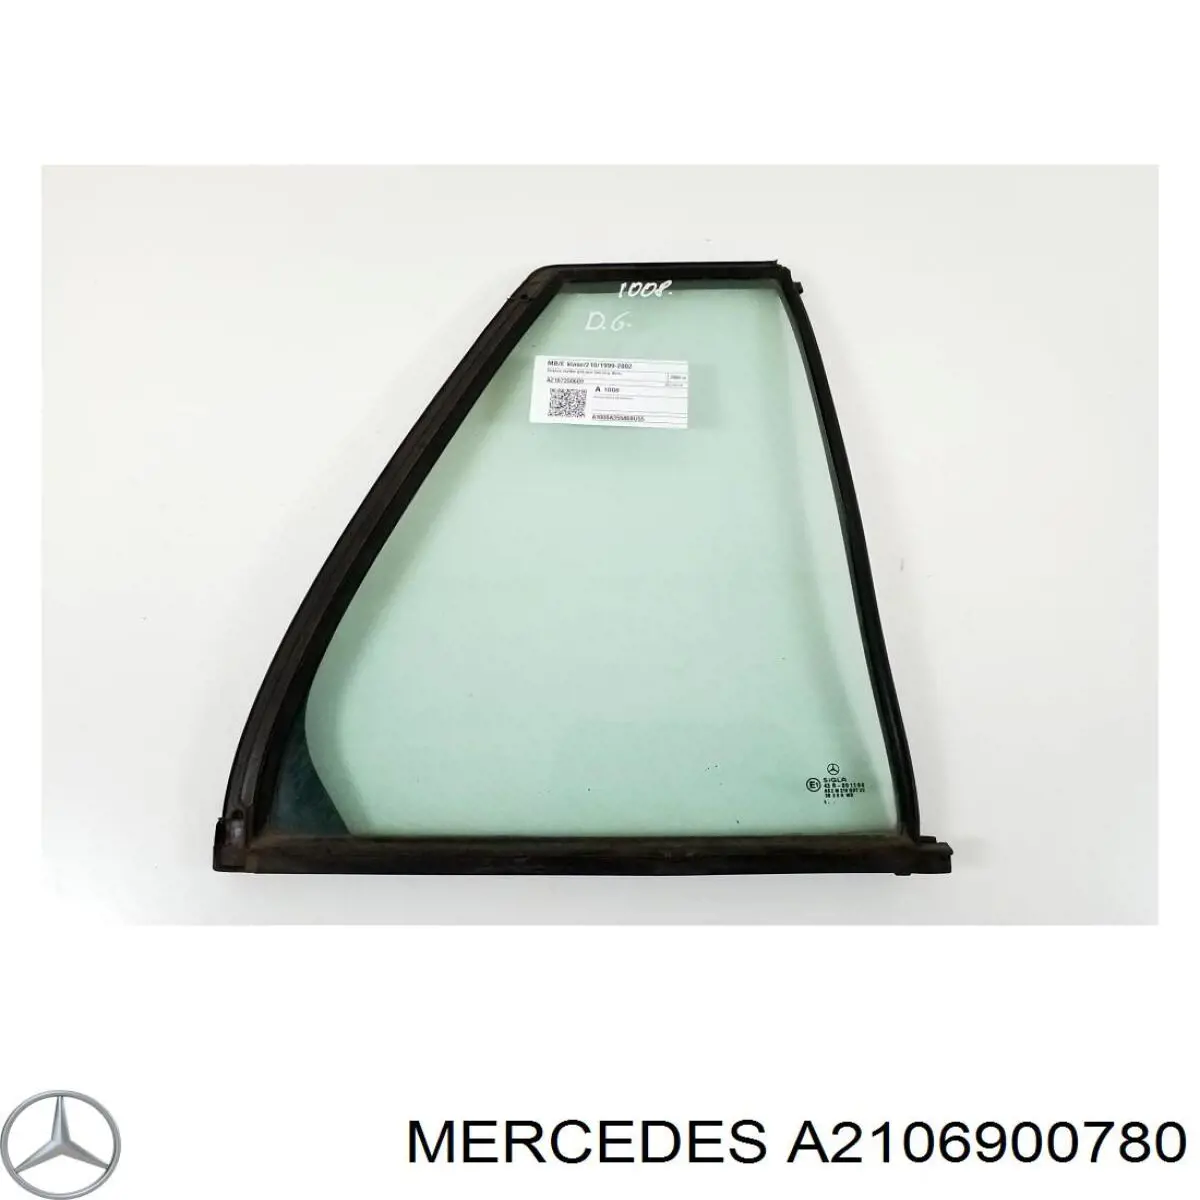 A2106900780 Mercedes moldura de cristal de la ventana de la puerta delantera izquierda